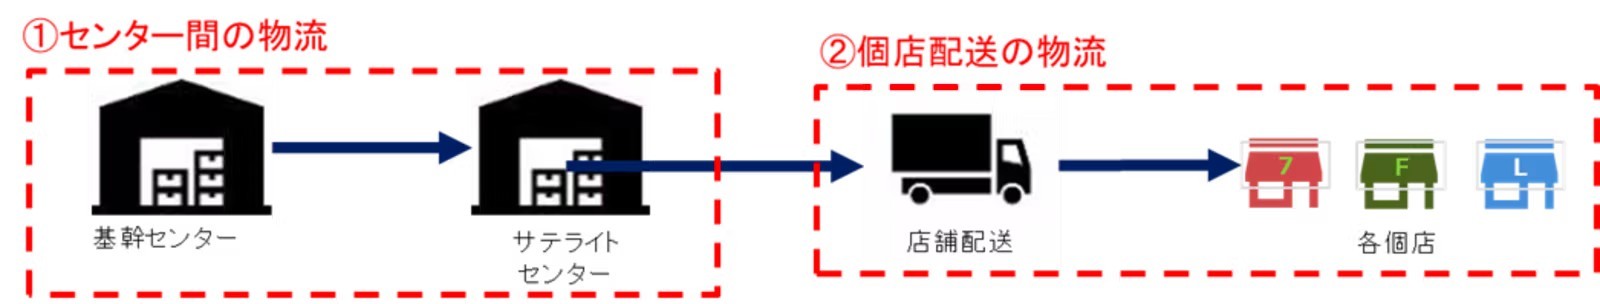 大手コンビニ3社が同じトラックで商品配送、配送距離を大幅短縮